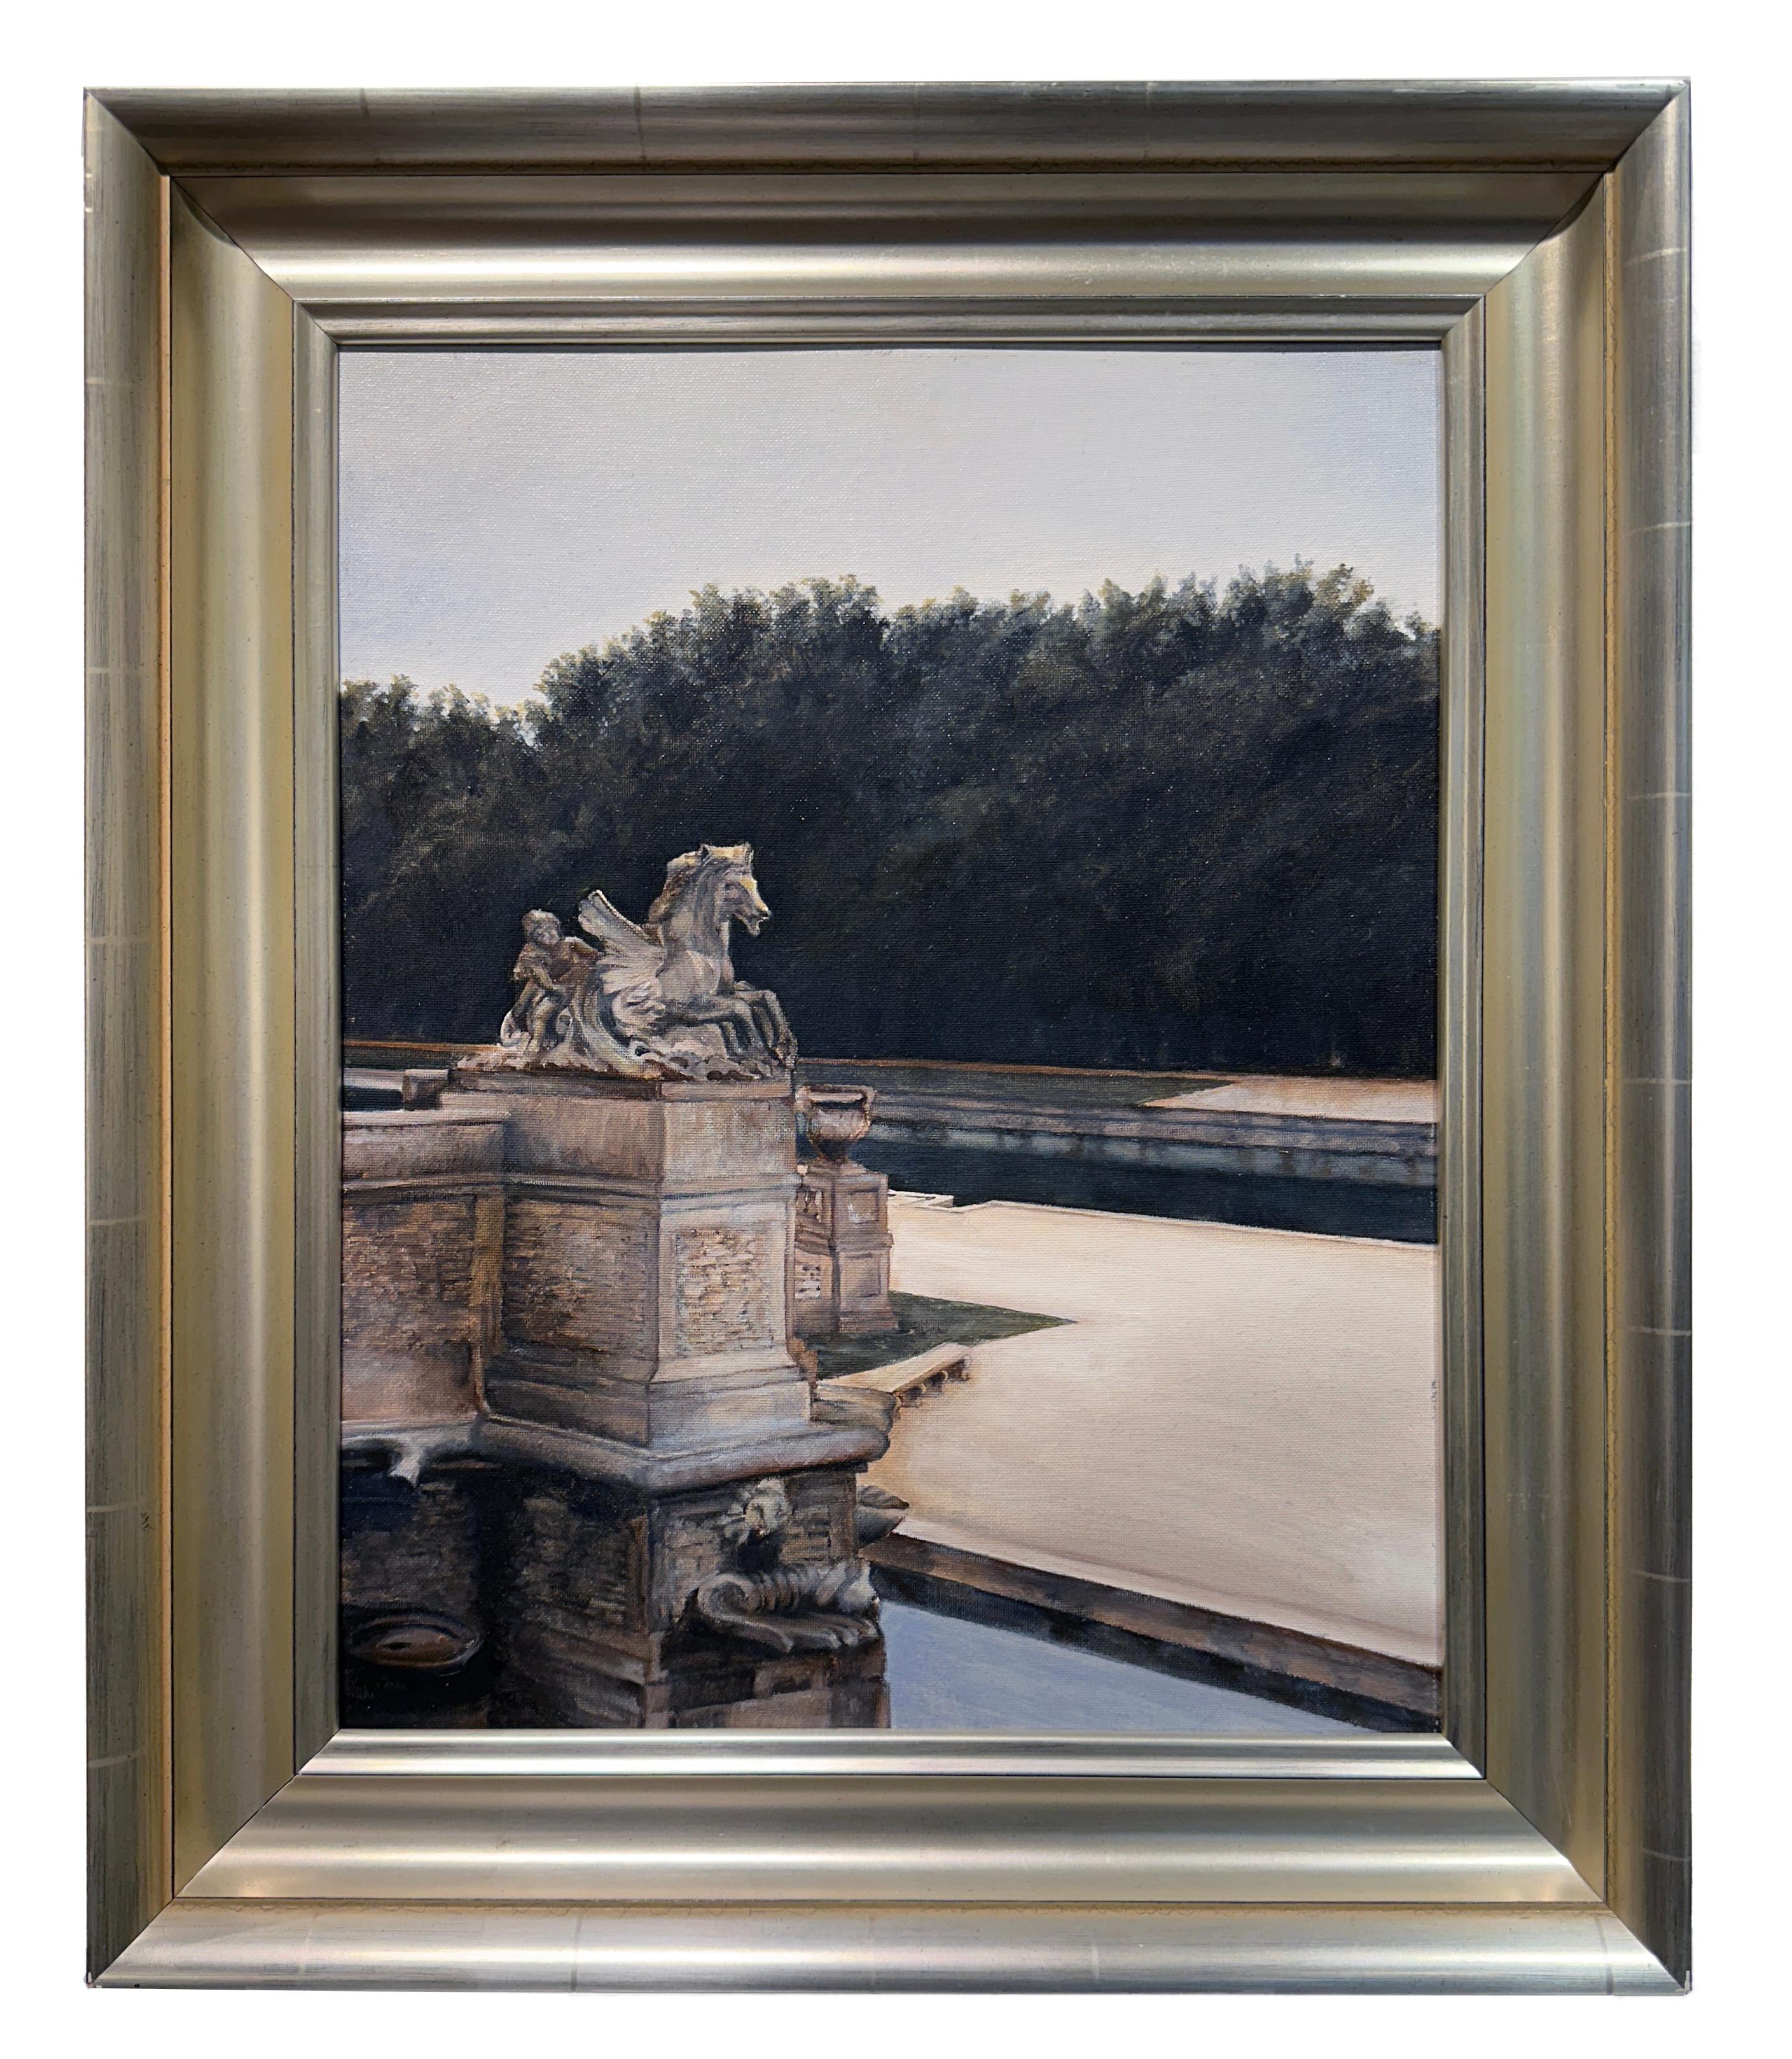 Richard Gibbons Landscape Painting – Charioteau – Französische Landschaft mit Gartenskulptur und reflektierendem Teich, gerahmt